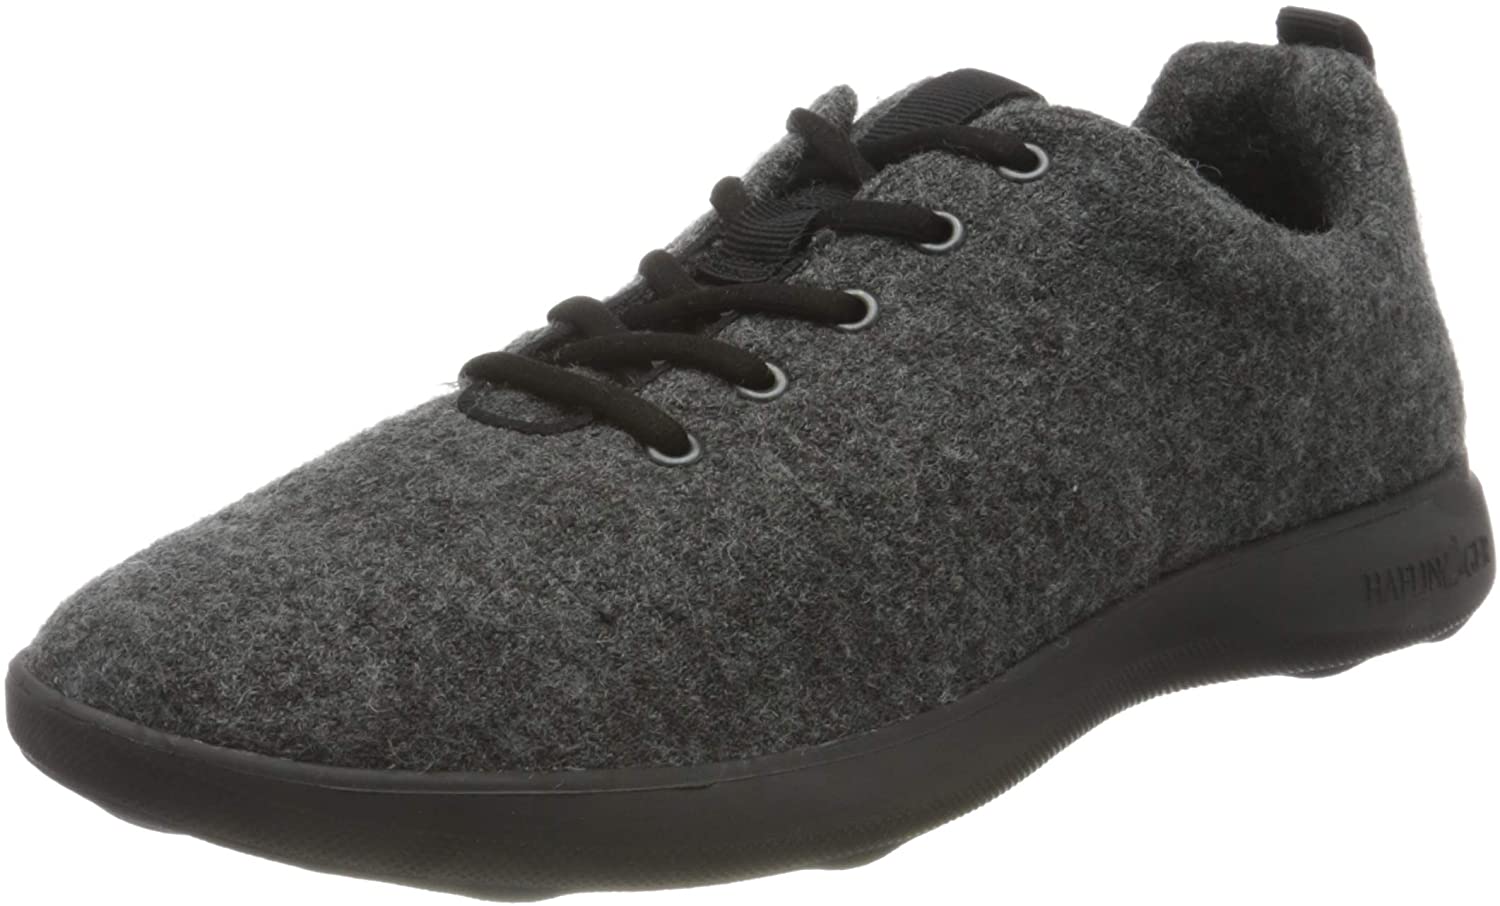 Haflinger Woollen Sneakers 950001 Grey/Black